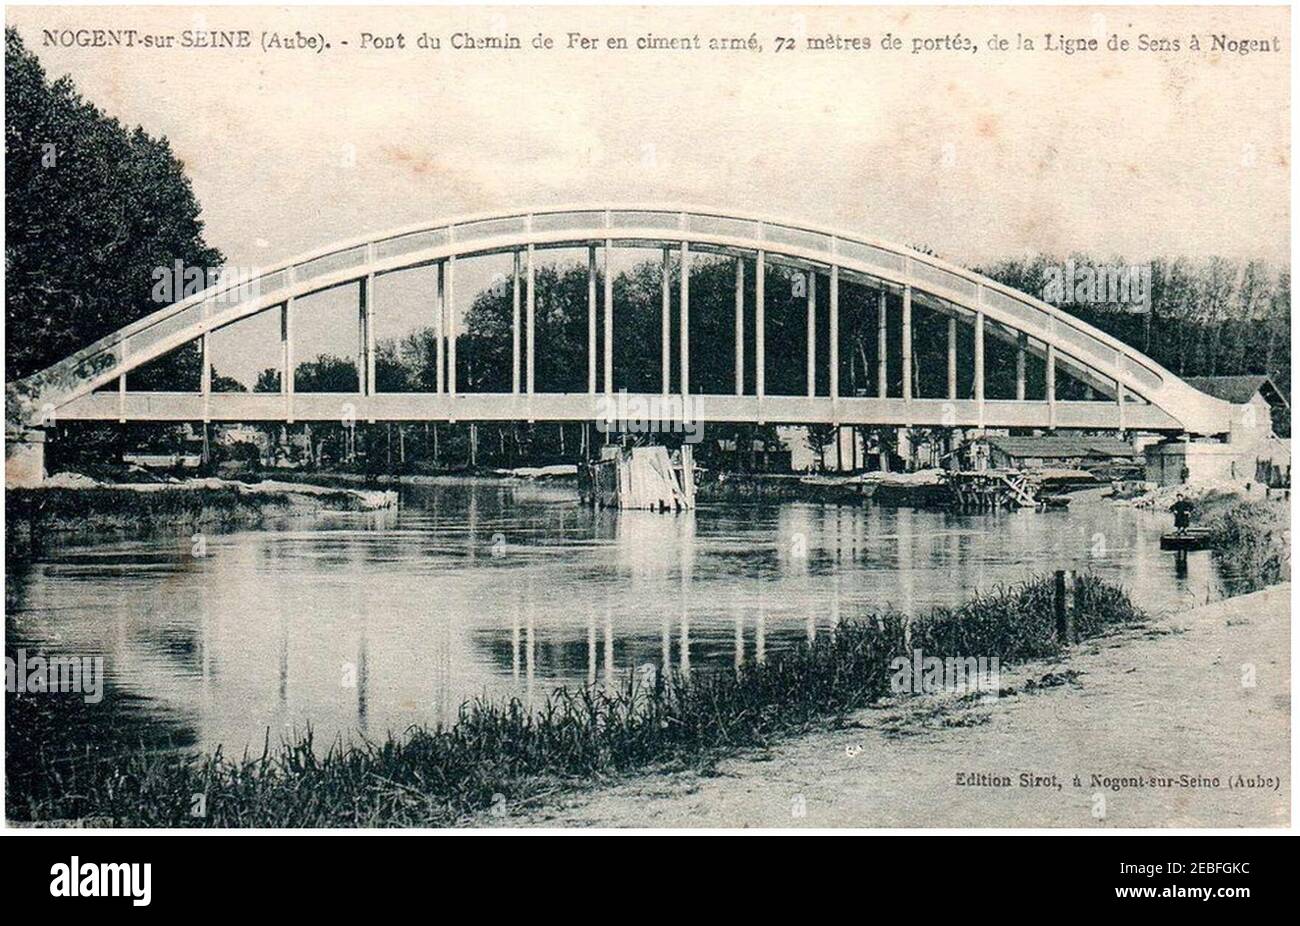 Nogent-sur-seine Pont de la ligne de Sens. Stockfoto